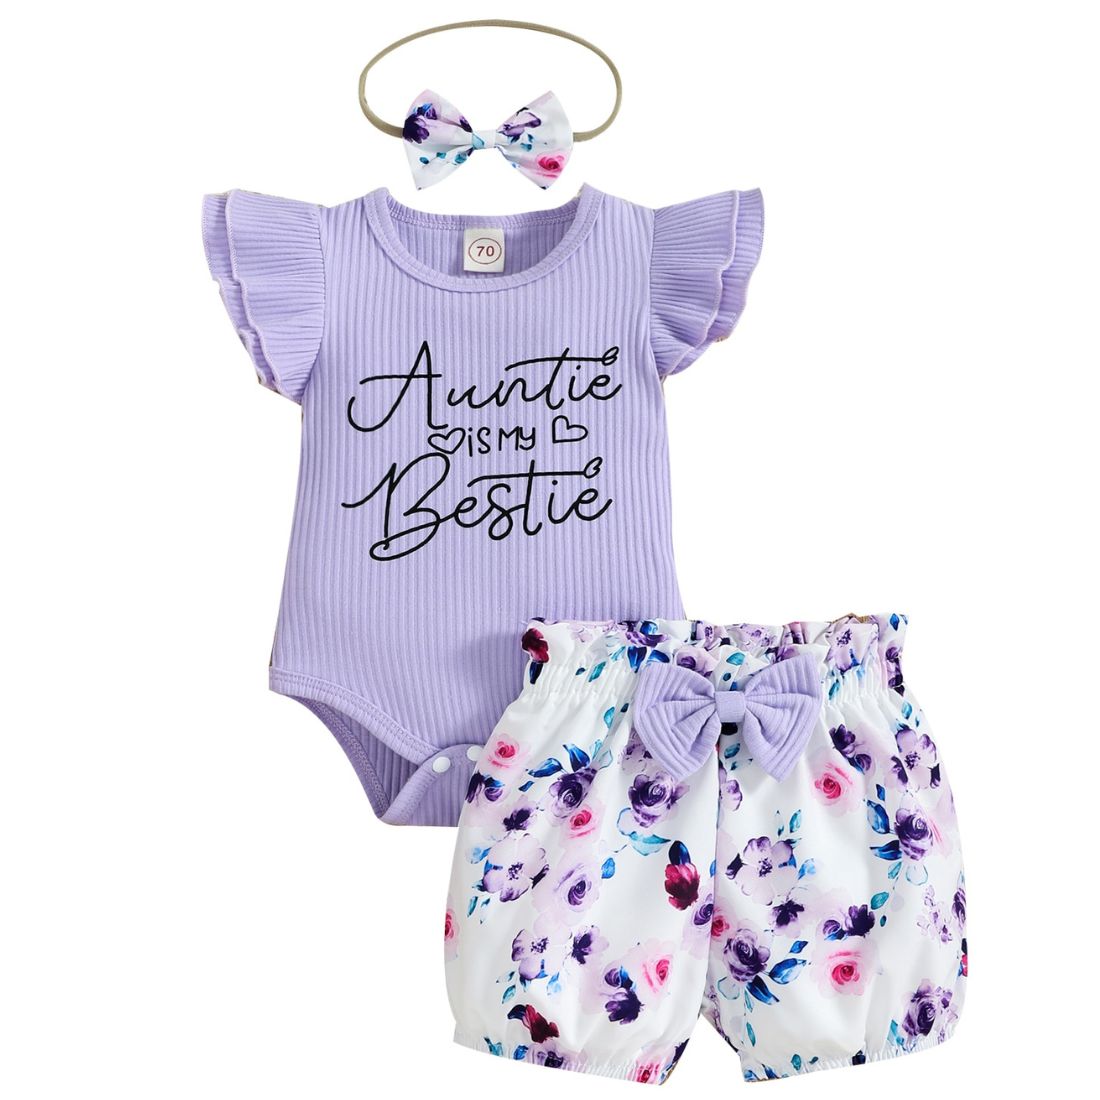 Auntie Is Bestie Baby Girl Bodysuit Set